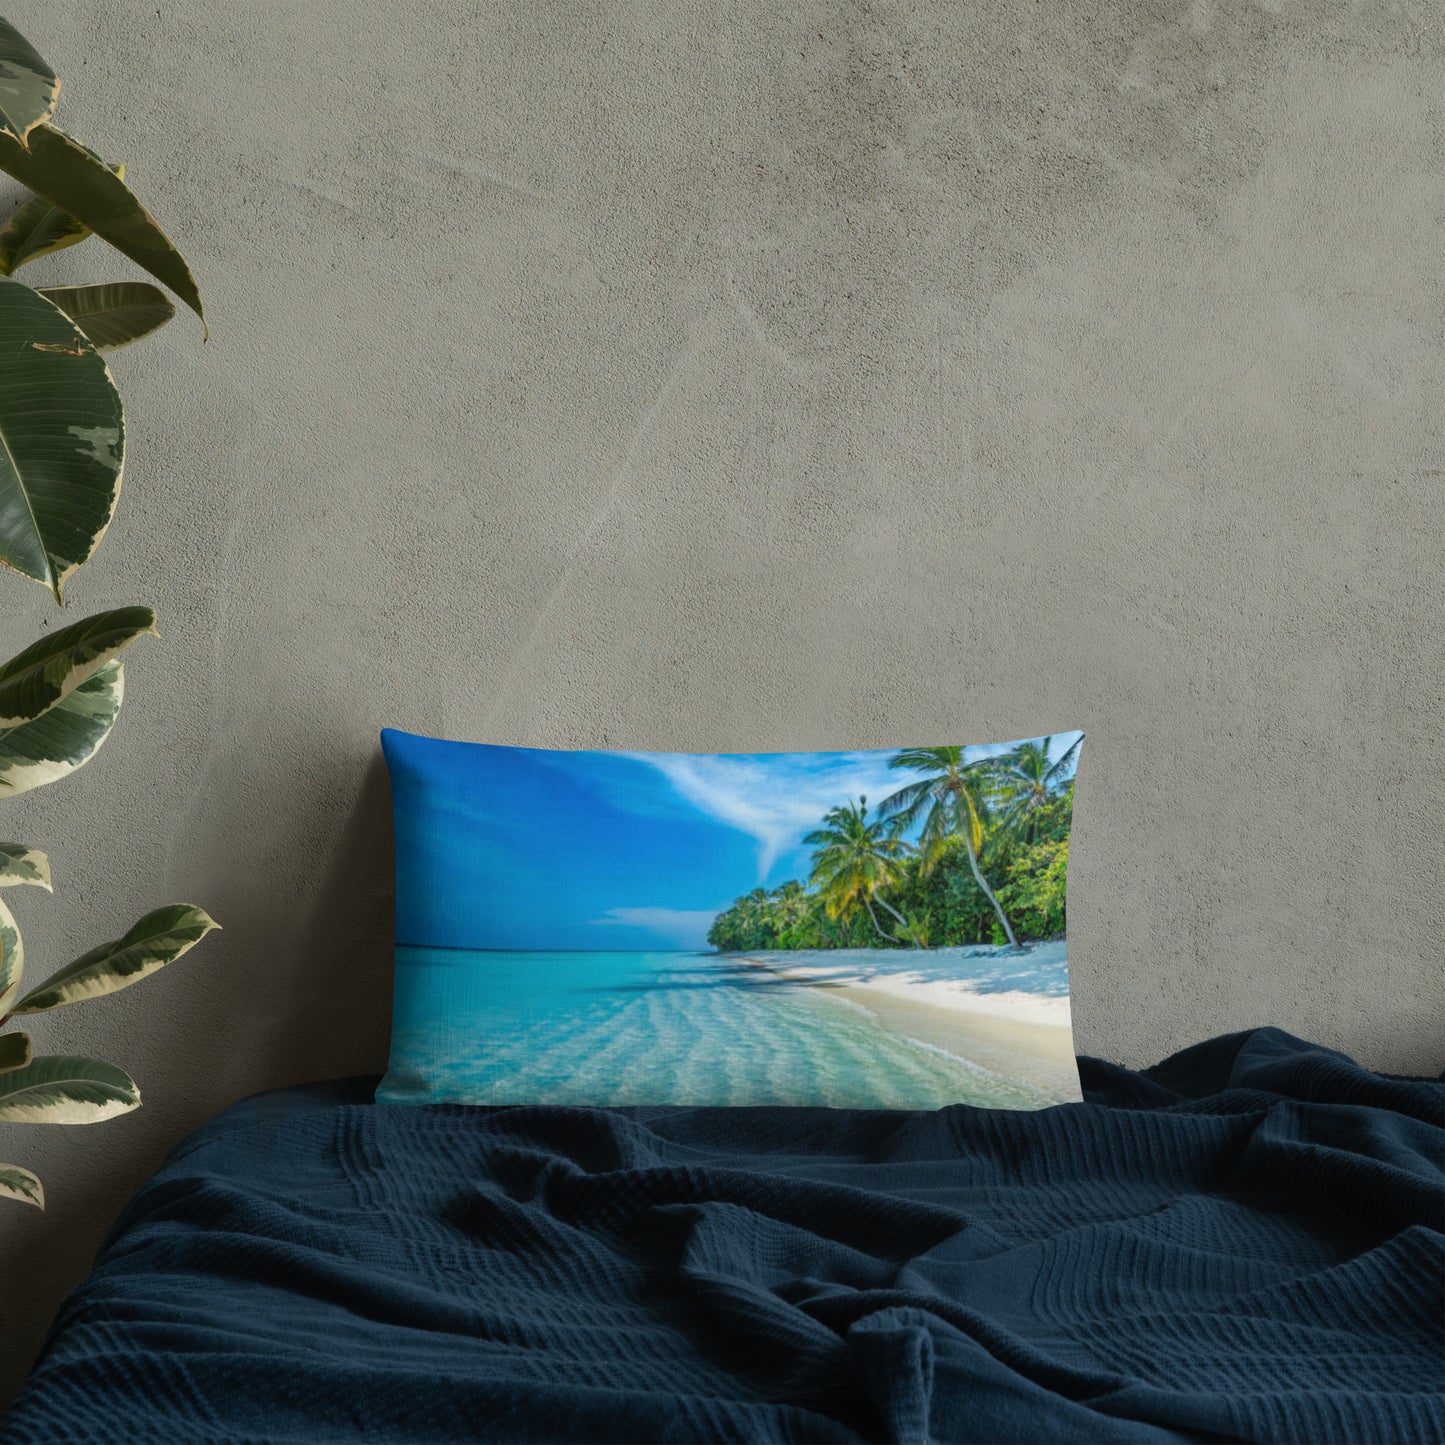 Premium Pillow (Best Premium Pillow - Scenic Ocean Shore View Model 0019)